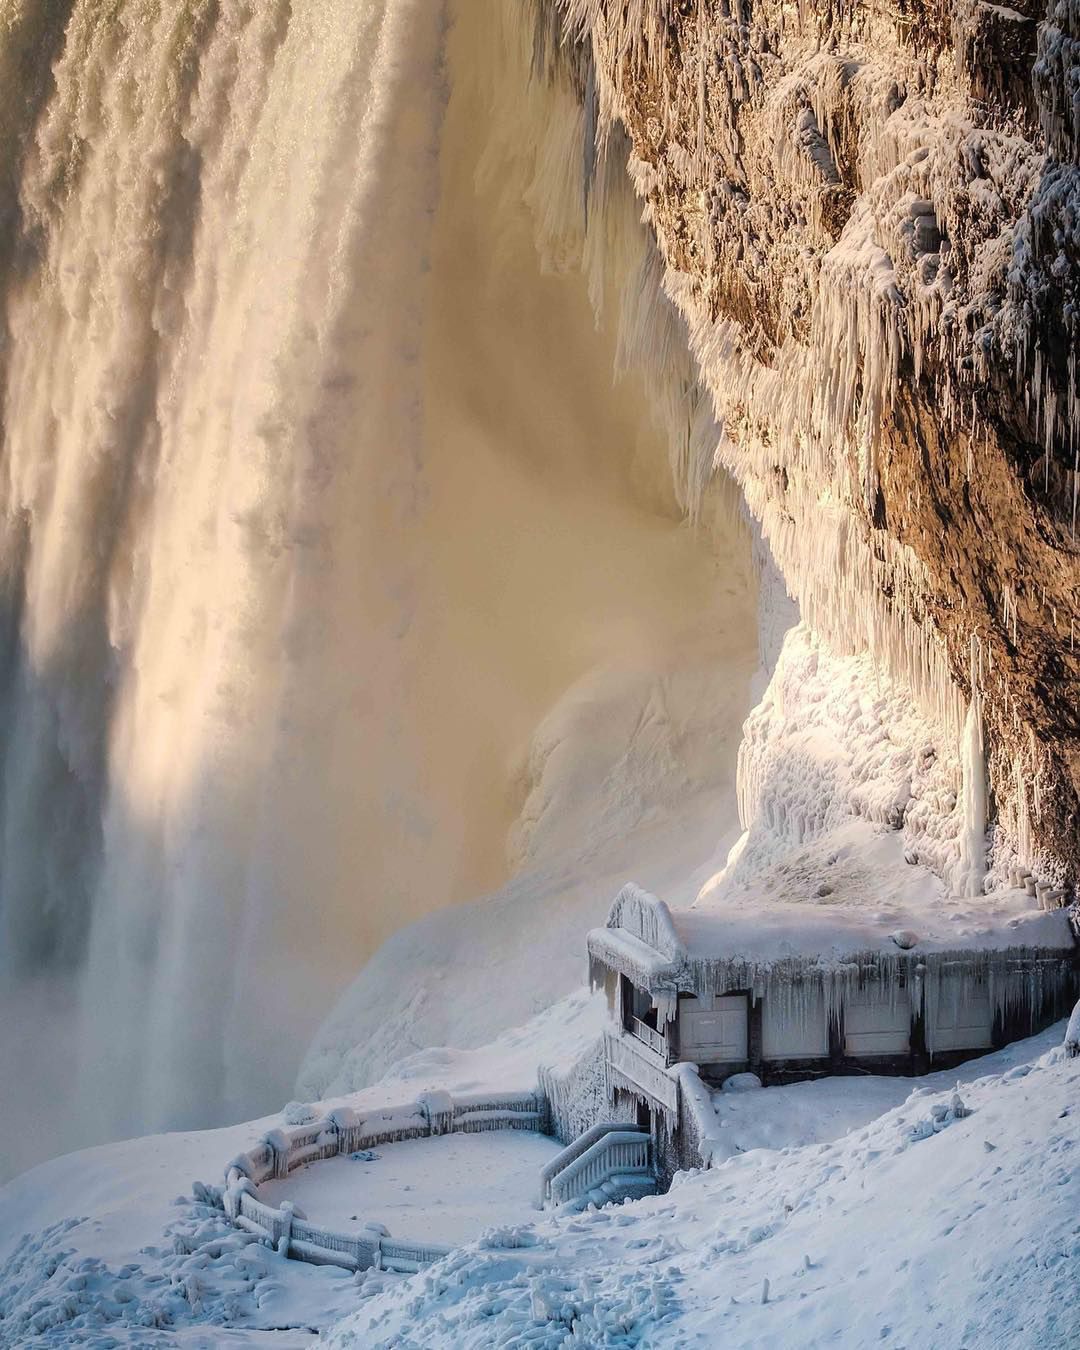 Wodospad Niagara zamarzł. Ten widok zapiera dech w piersi!